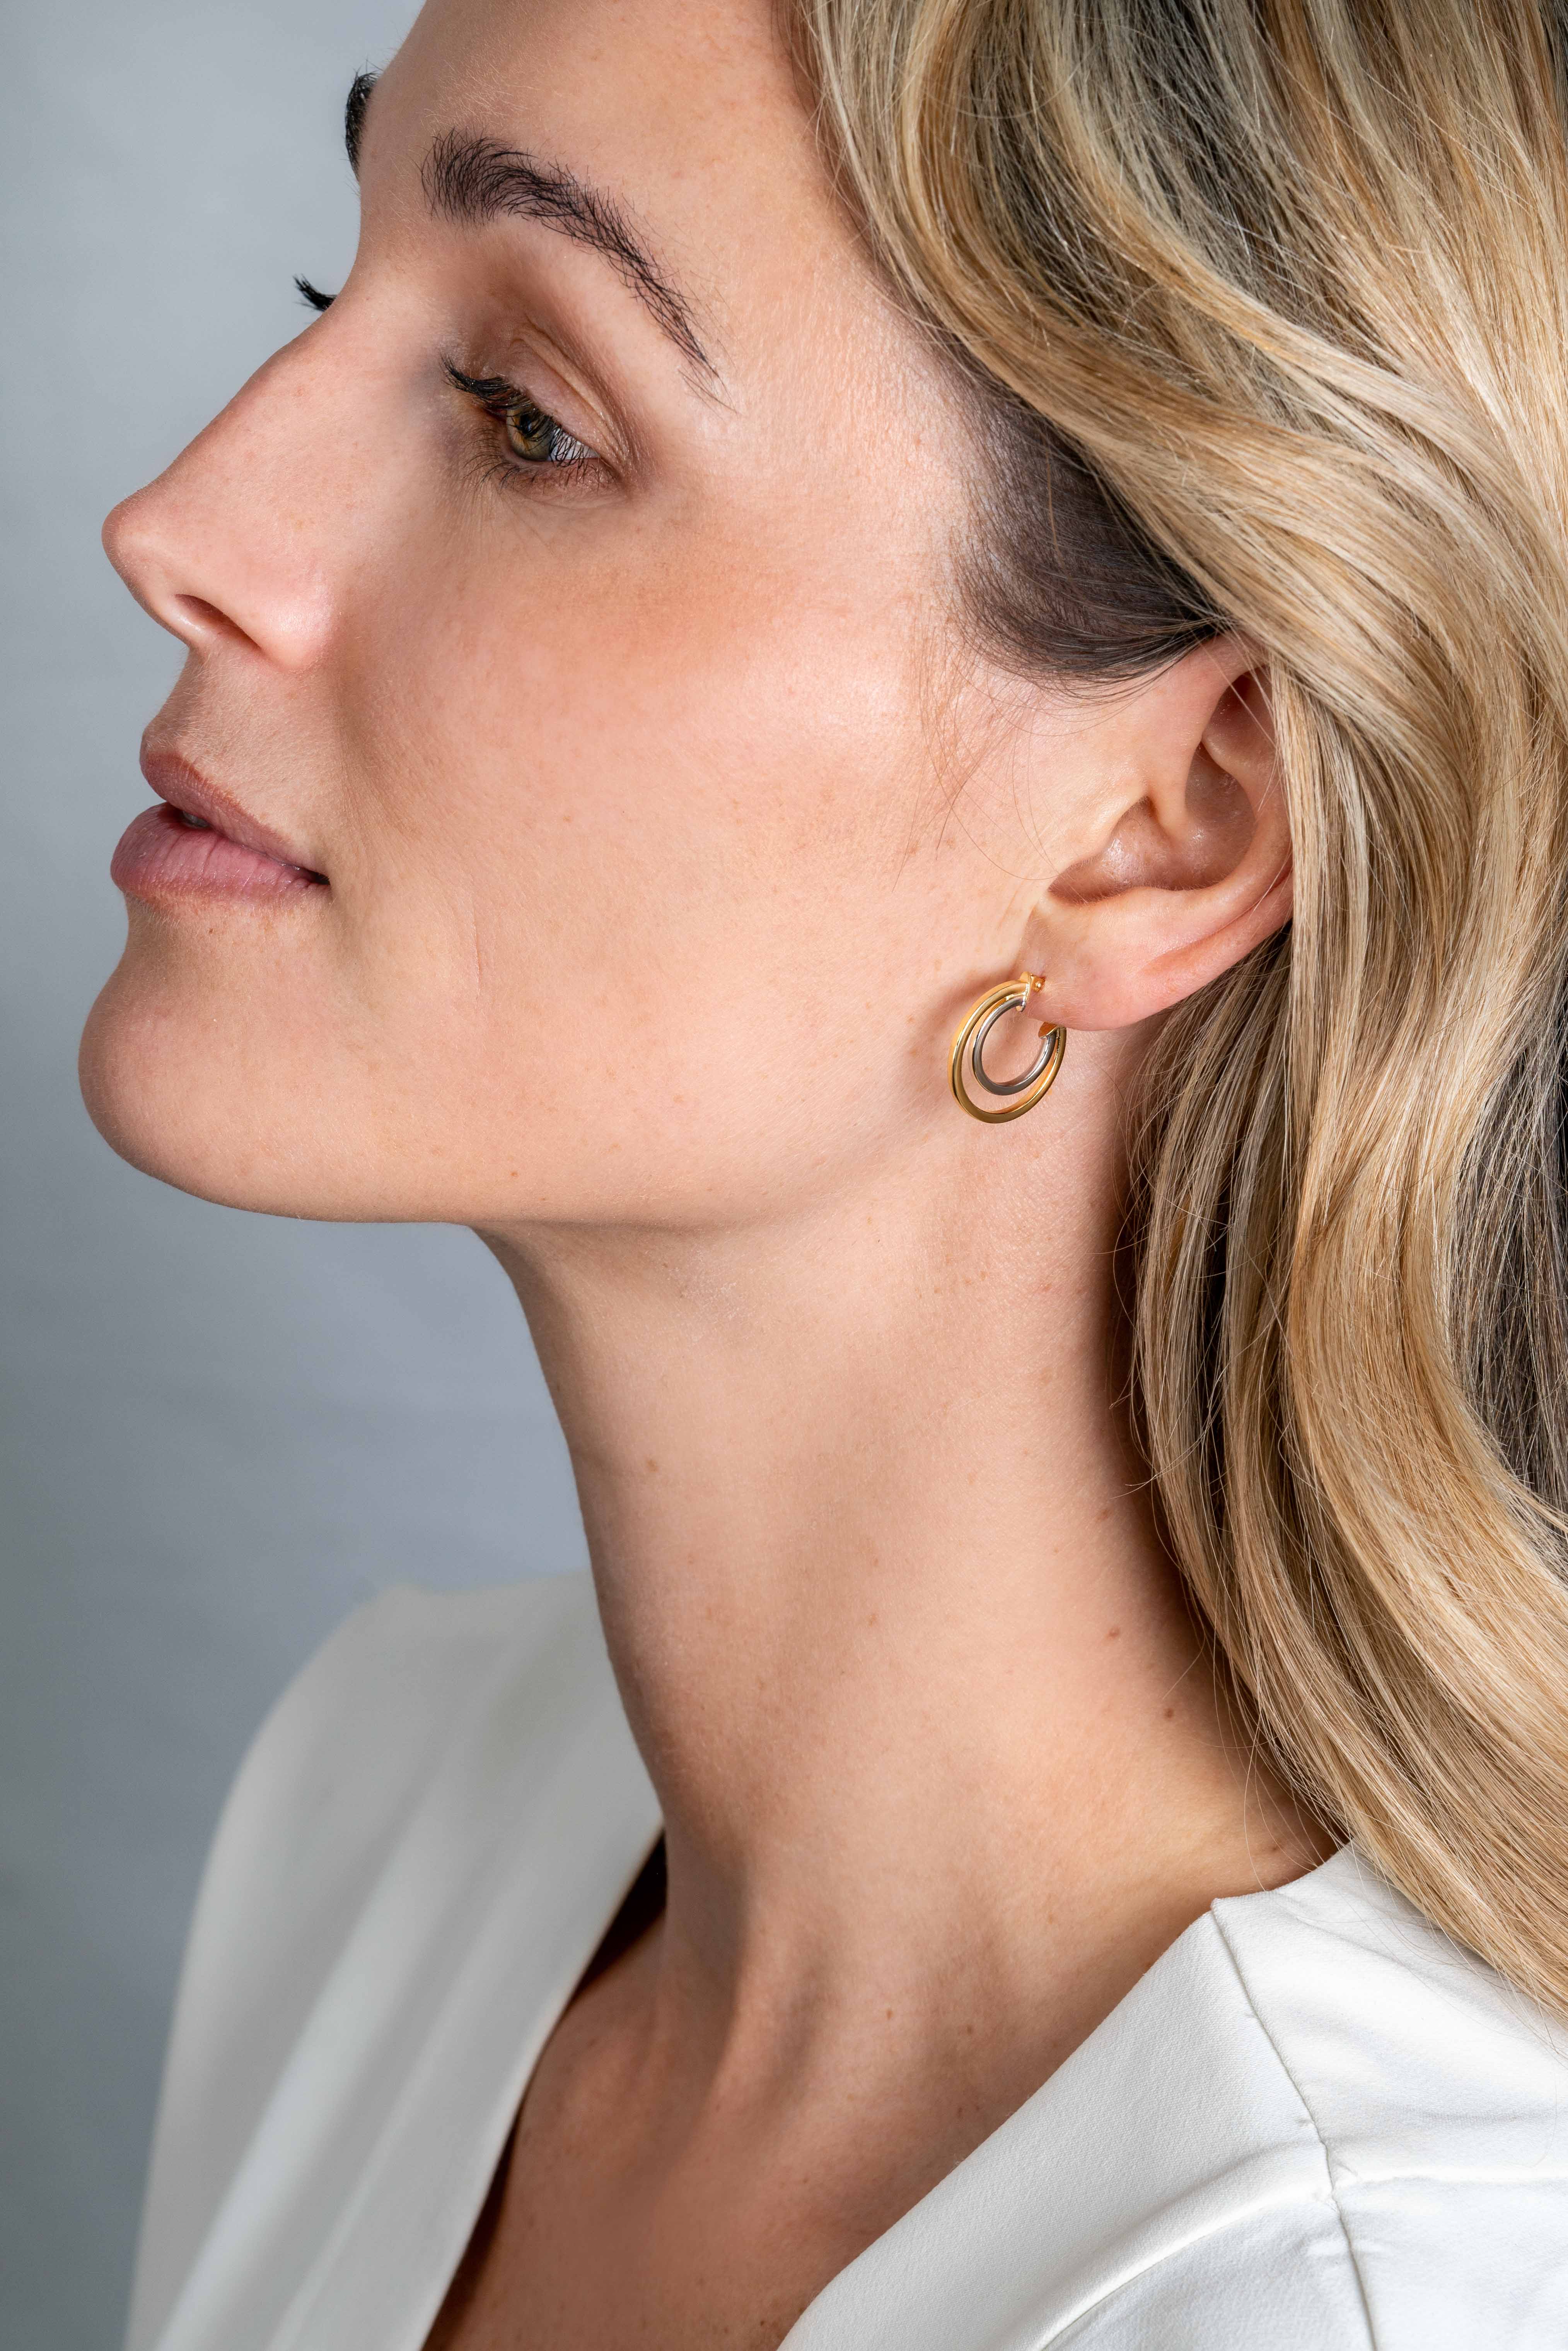 ZINZI Gold 14 krt gouden bicolor oorringen 18mm, met multi-look uitstraling. Met een vierkante buis van 1,5mm breed ZGO335